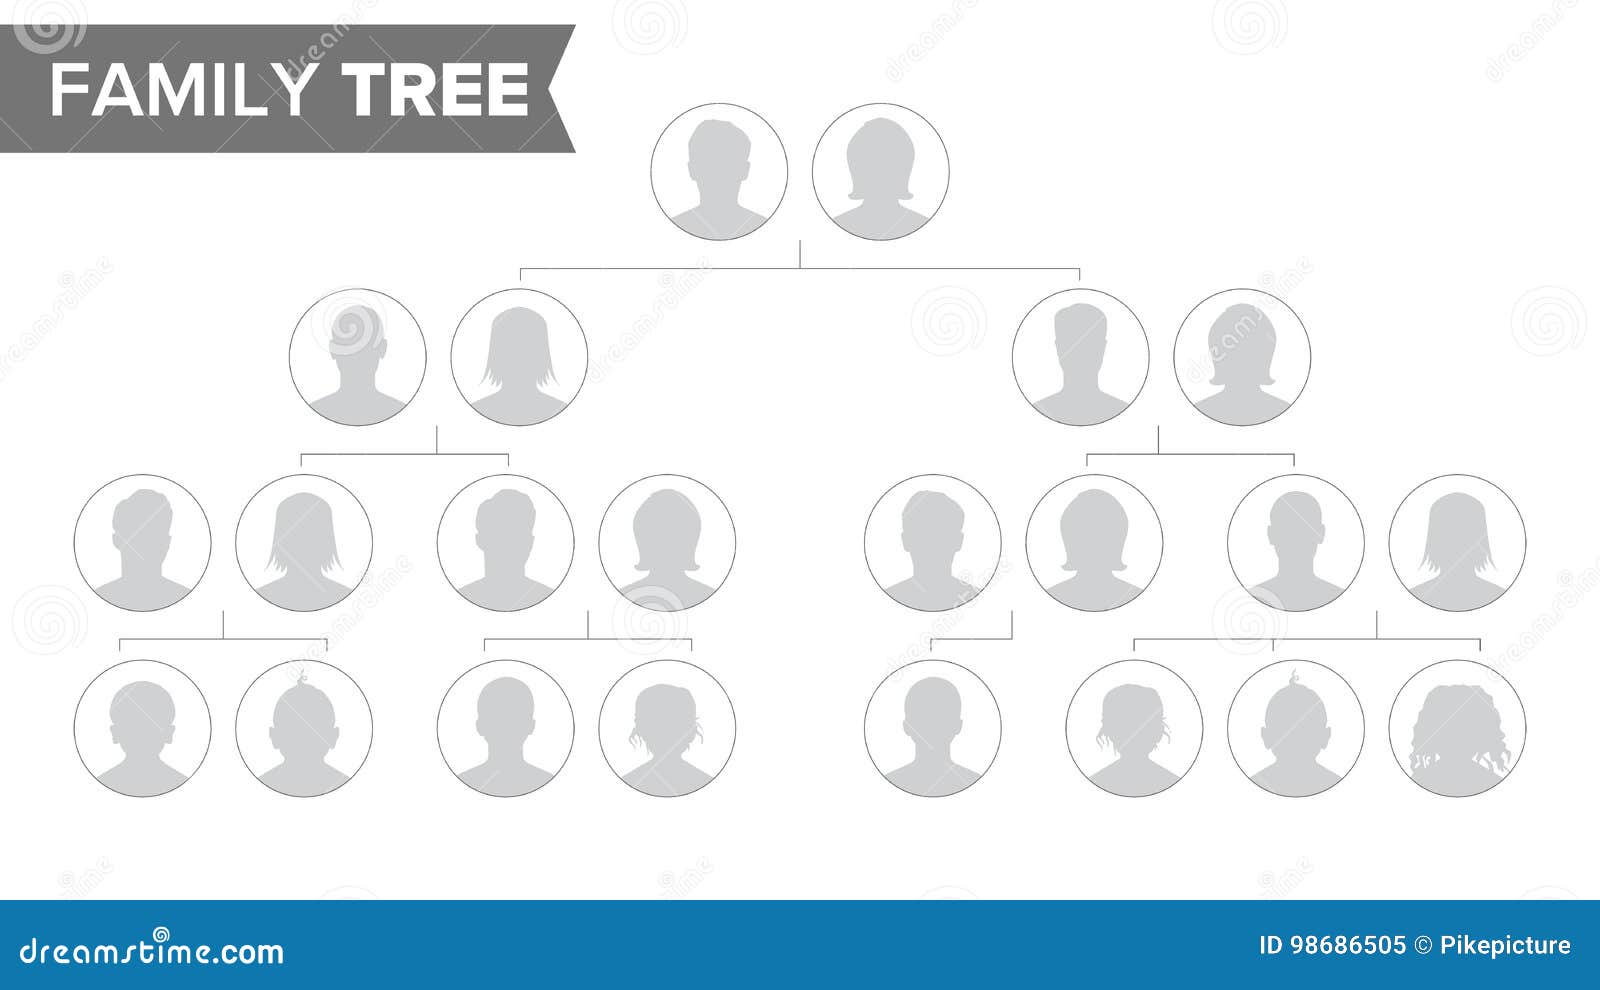 Family Tree Tree Chart